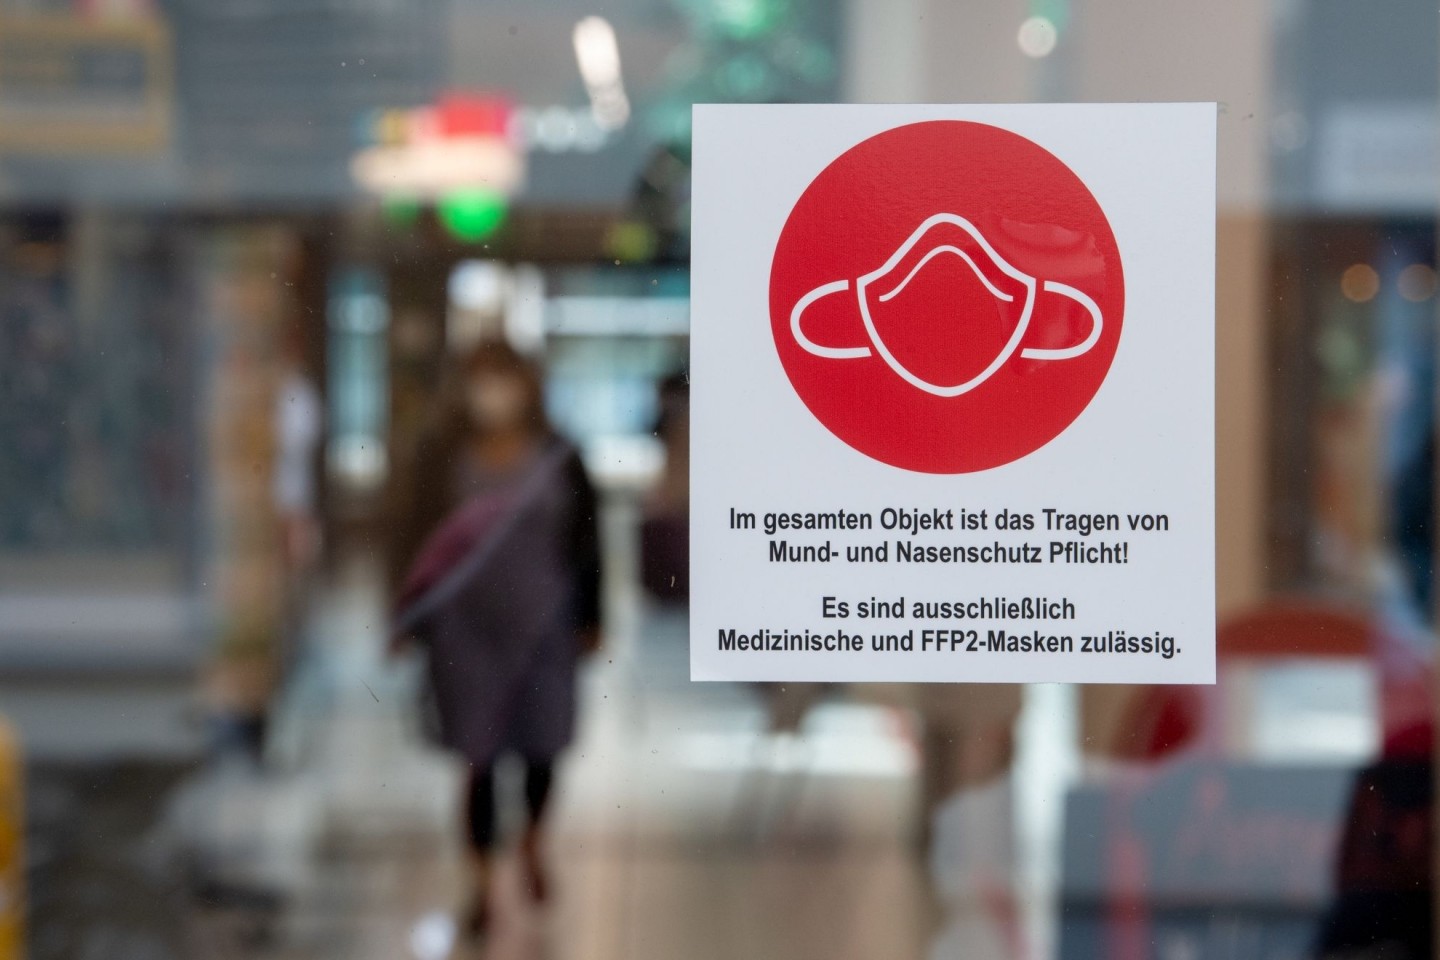 Ein Schild am Eingang zu einer Einkaufspassage weist auf das Tragen von Mund- und Nasenschutz hin.